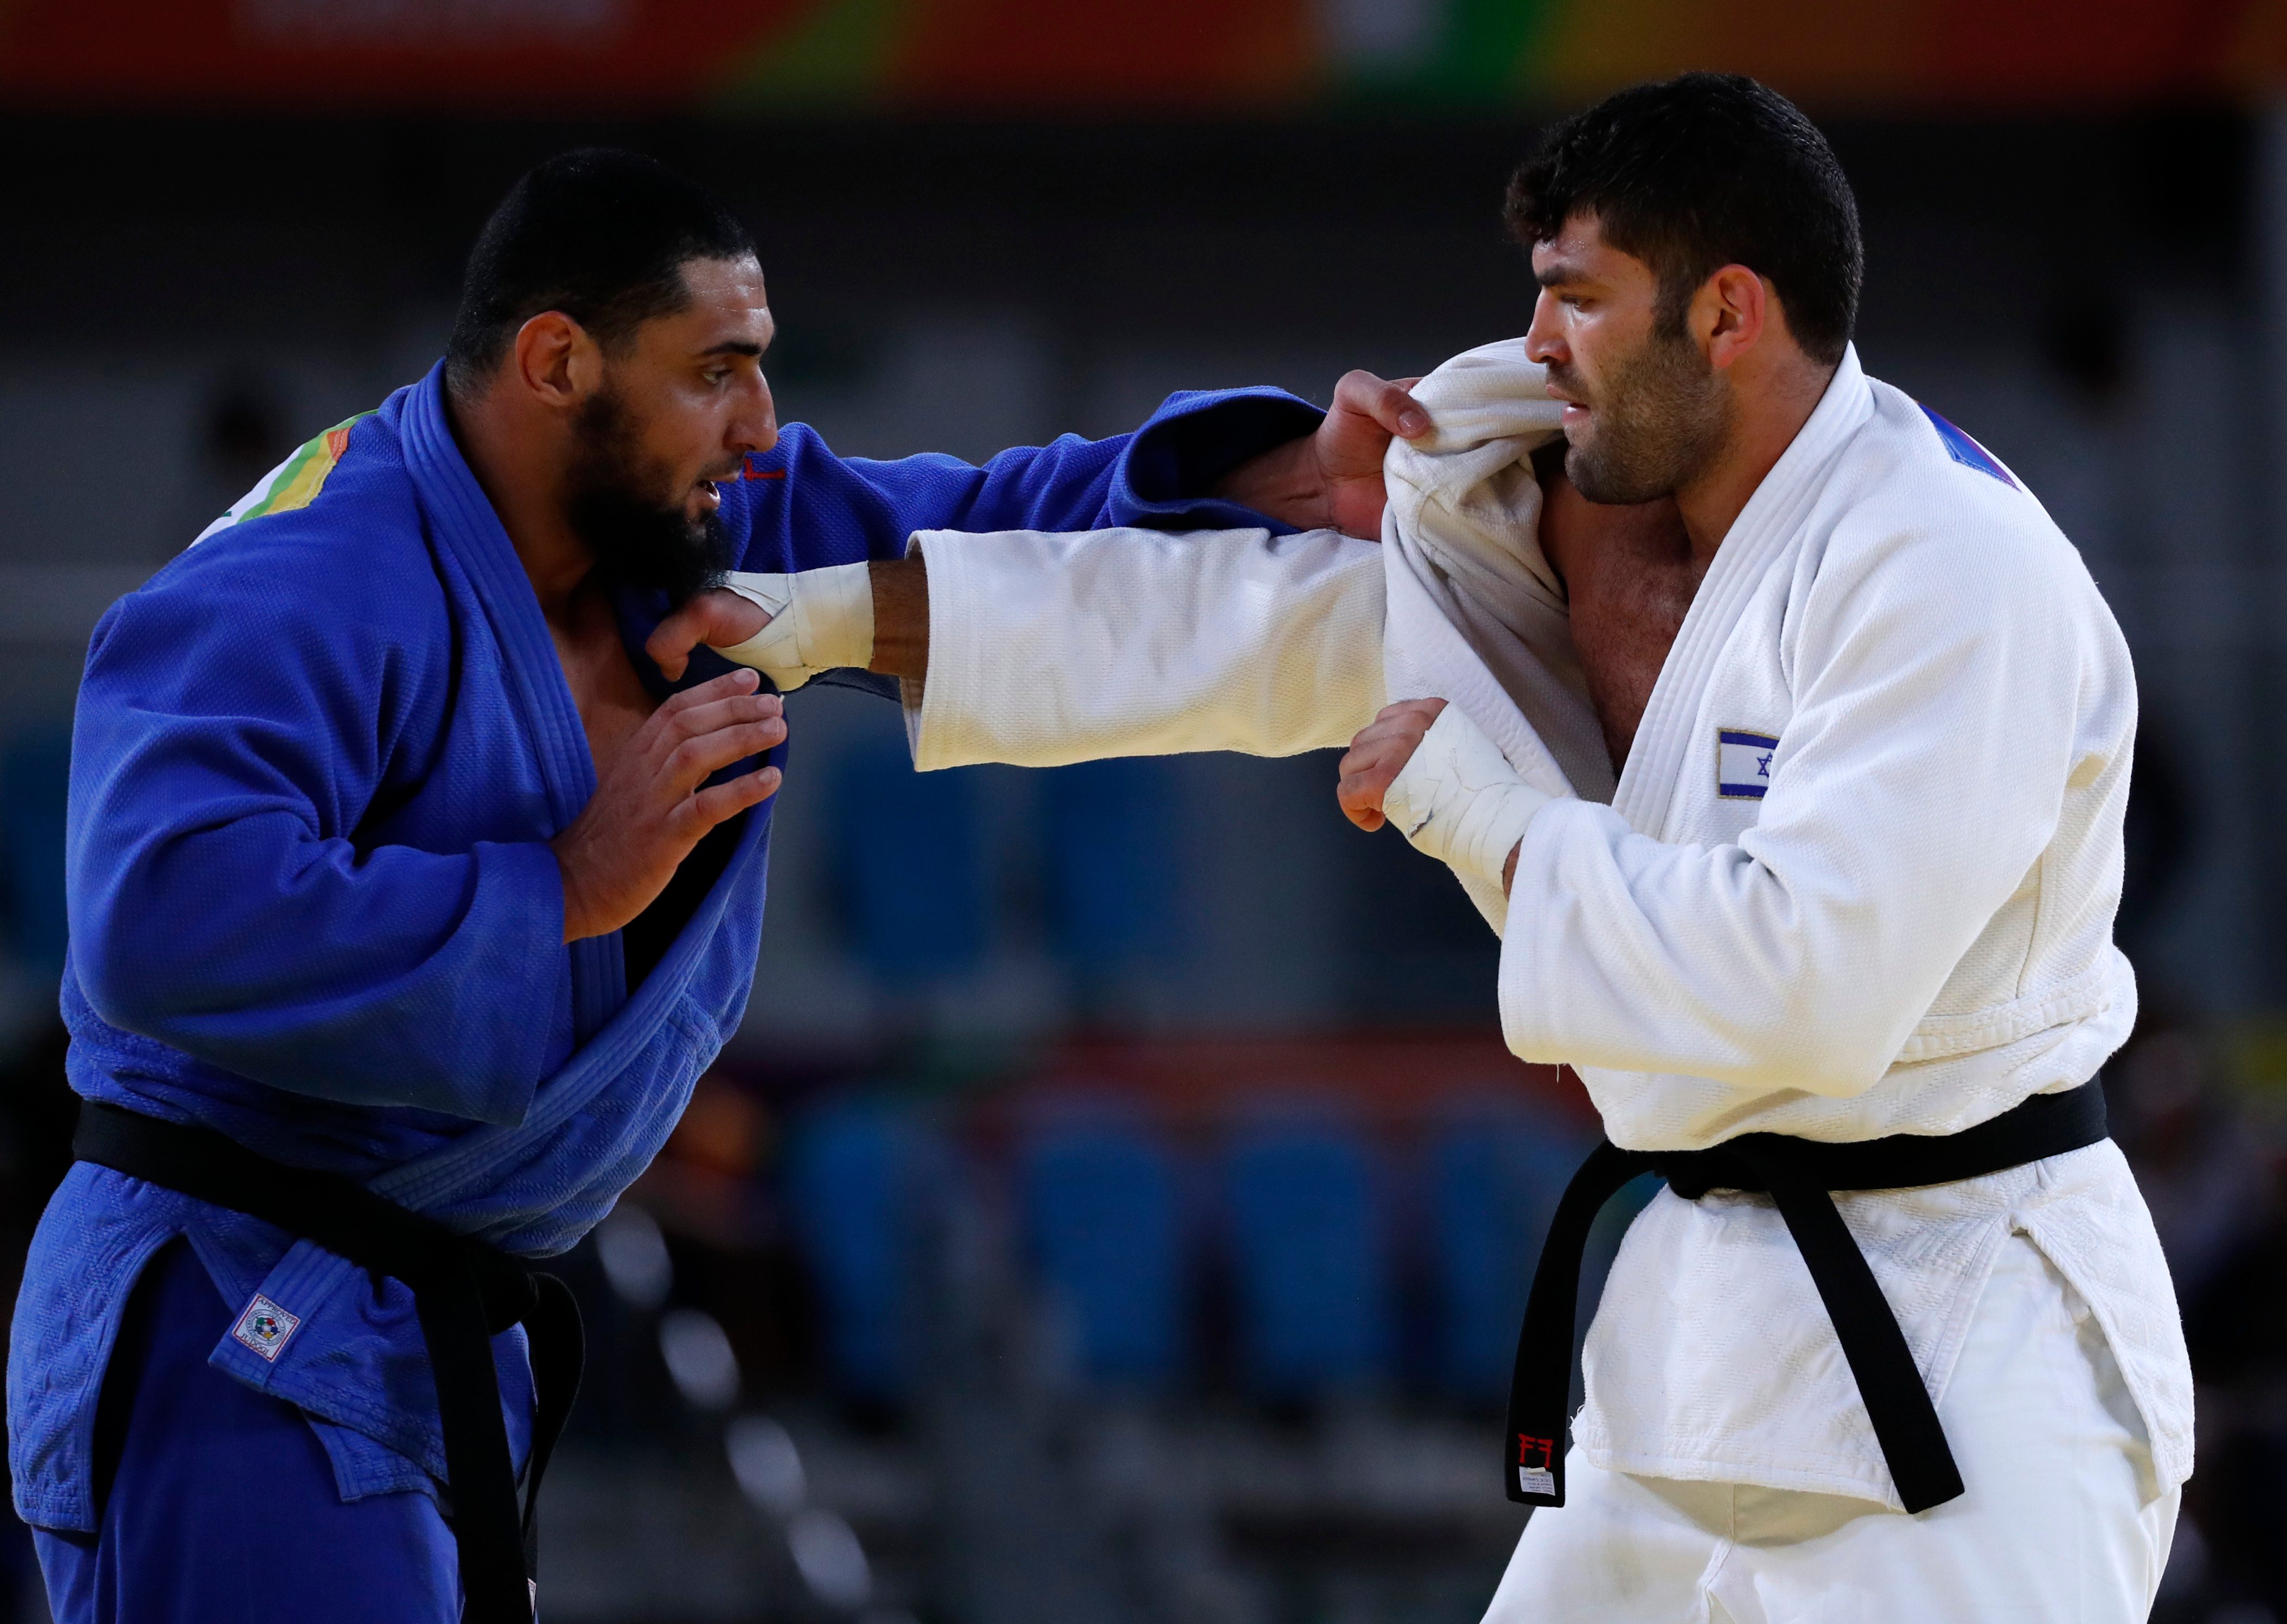 Atlet judo Israel, Or Sasson (kanan), dan atlet Mesir, Islam El Shehaby, saat bertanding di nomor +100kg di Olimpiade Rio, pada 12 Agustus 2016. Foto oleh Orlando Barria/EPA 